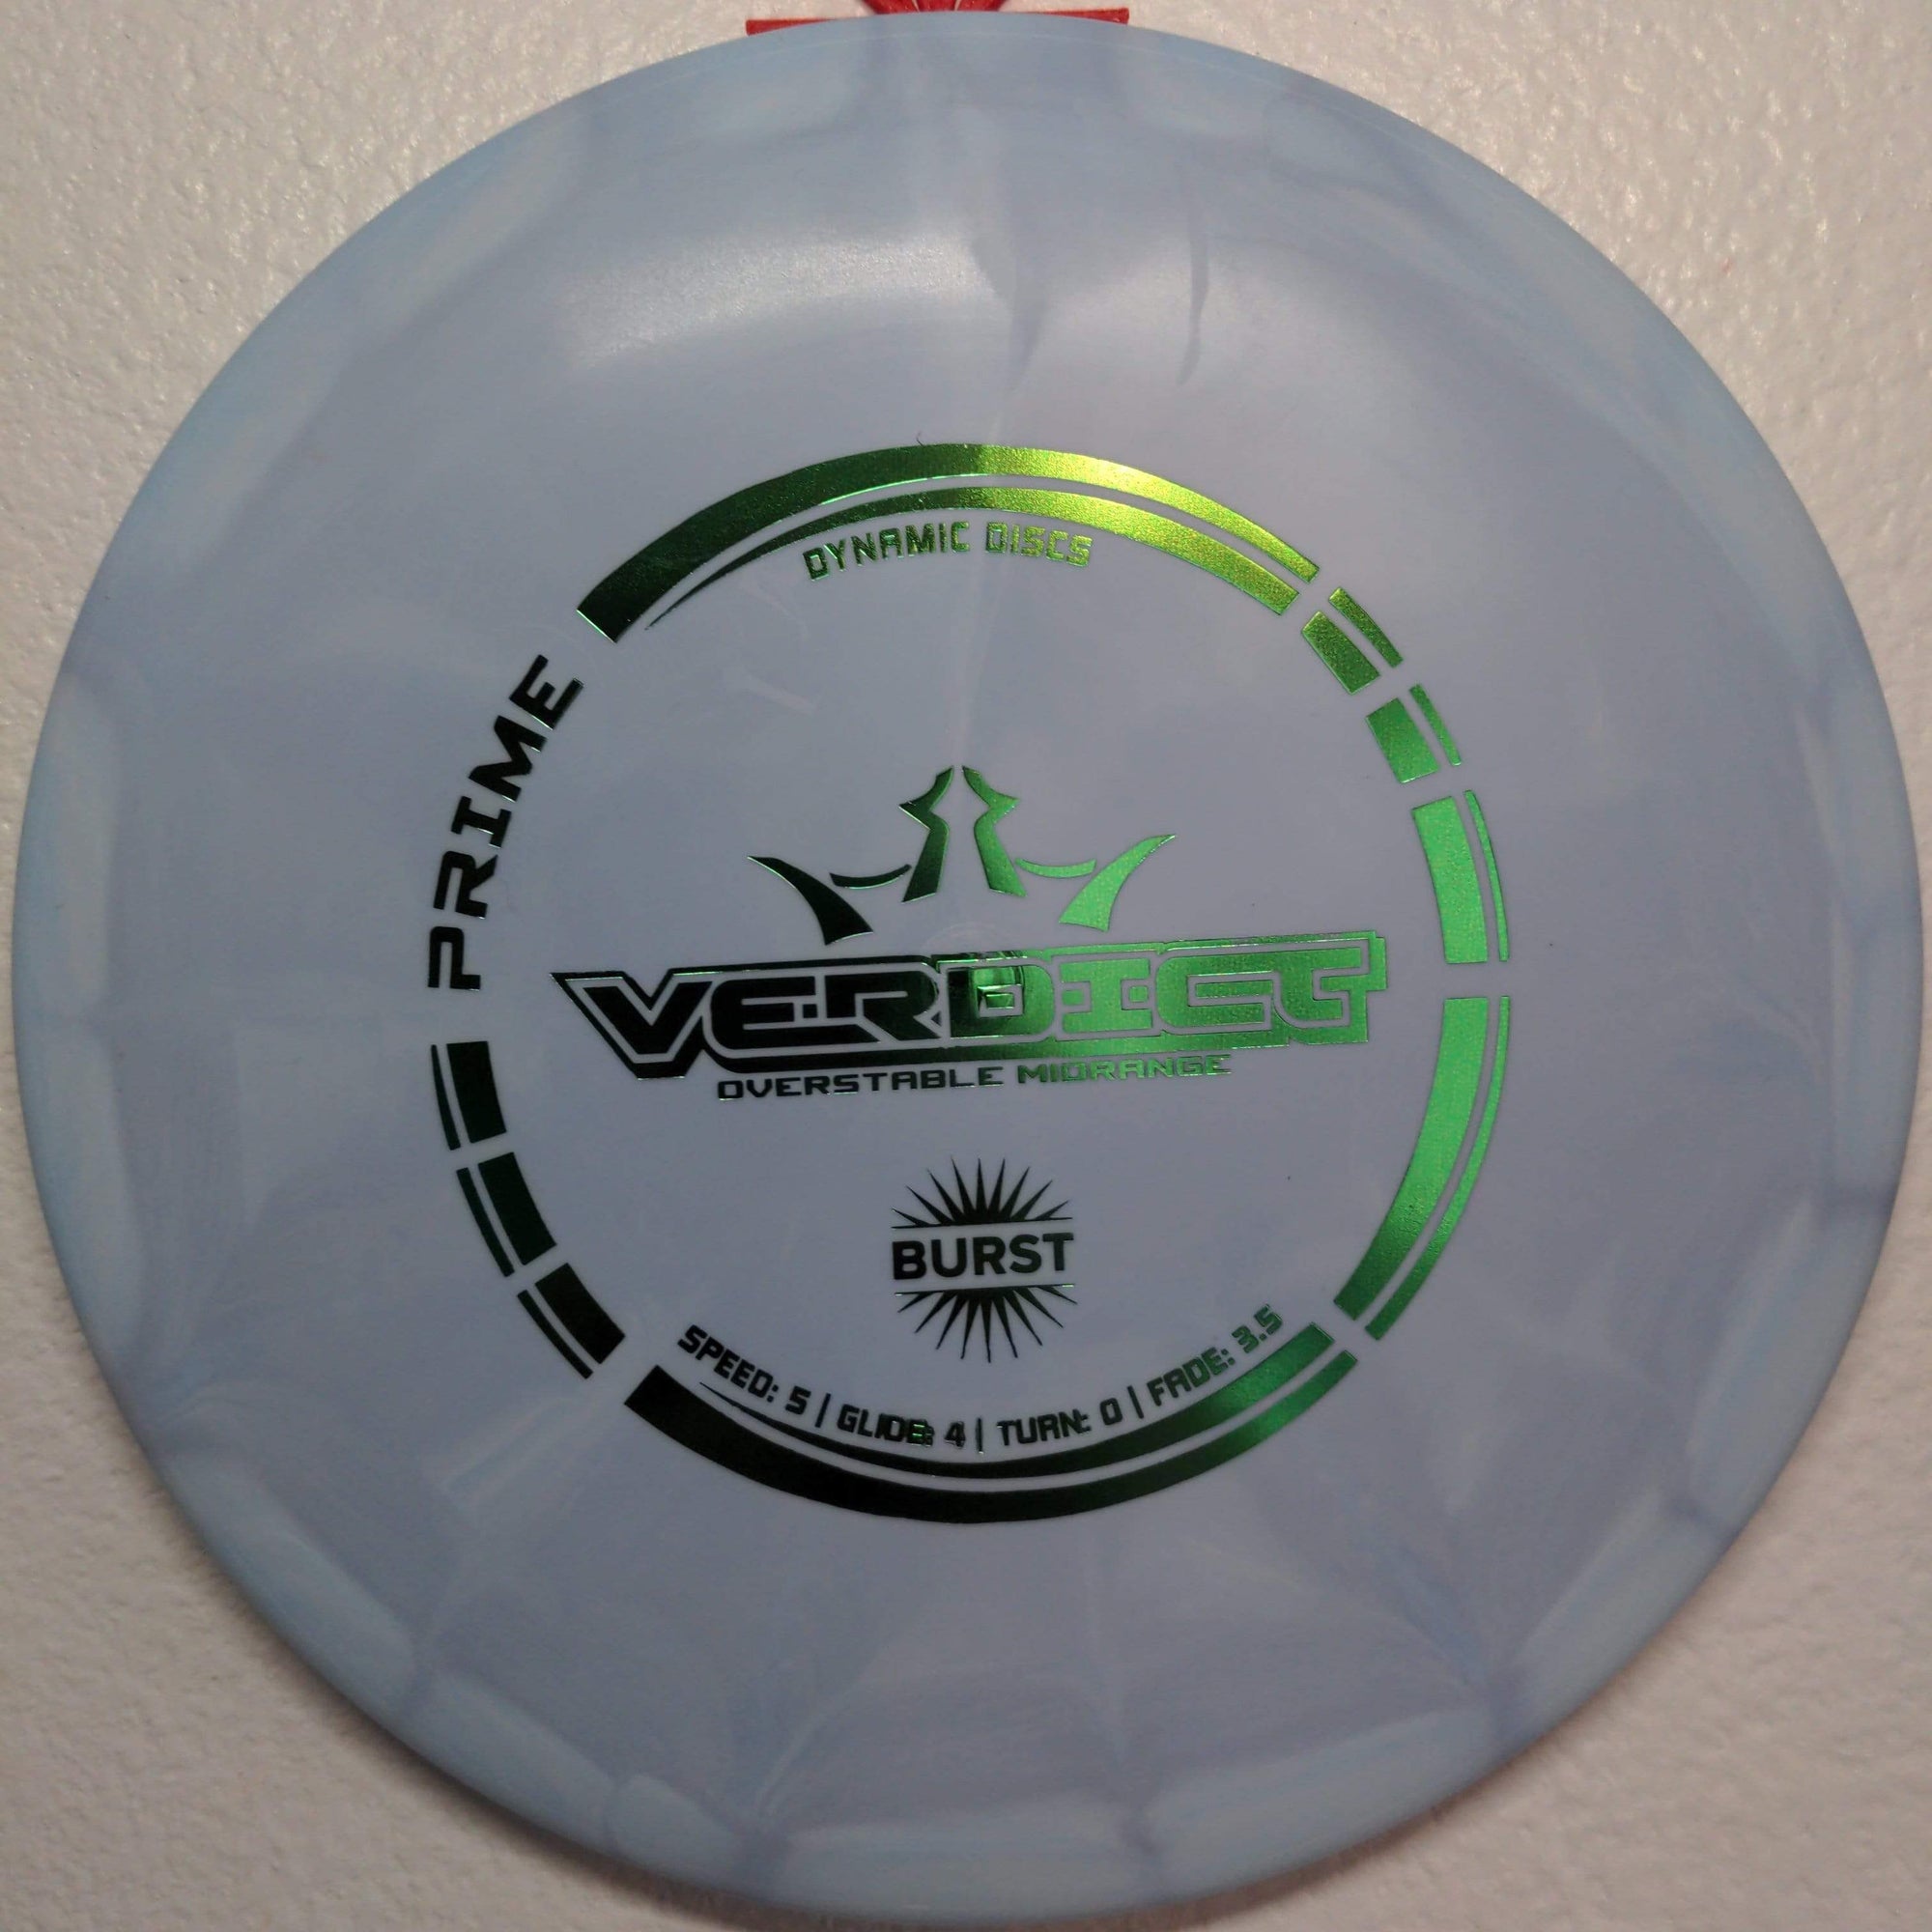 Dynamic Discs Mid Range Blue Green Foil Stamp 180g Prime Burst Verdict